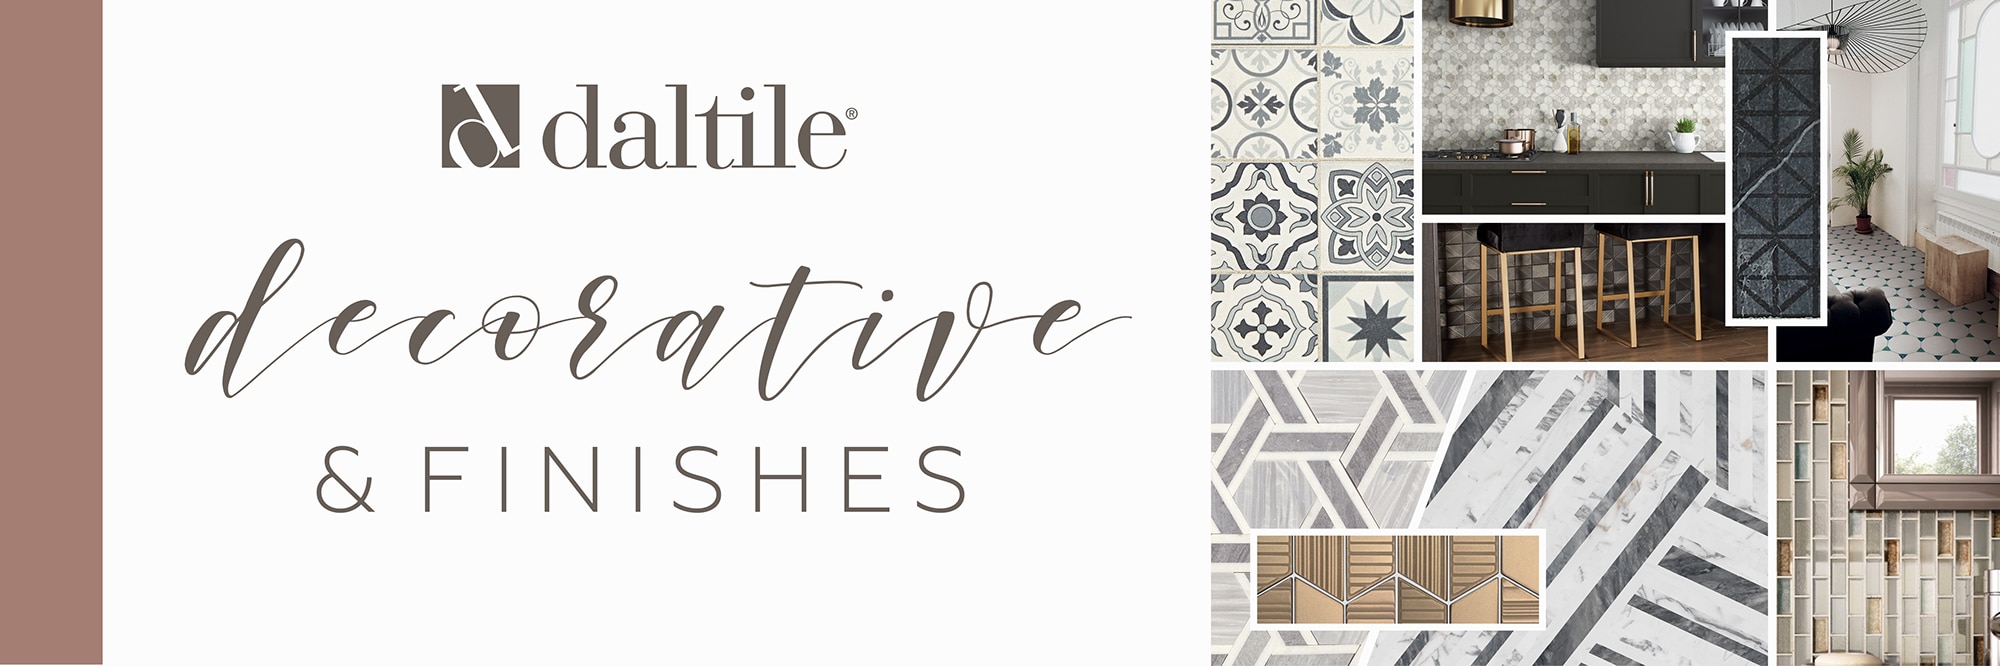 Daltile - Decorative & Finishes